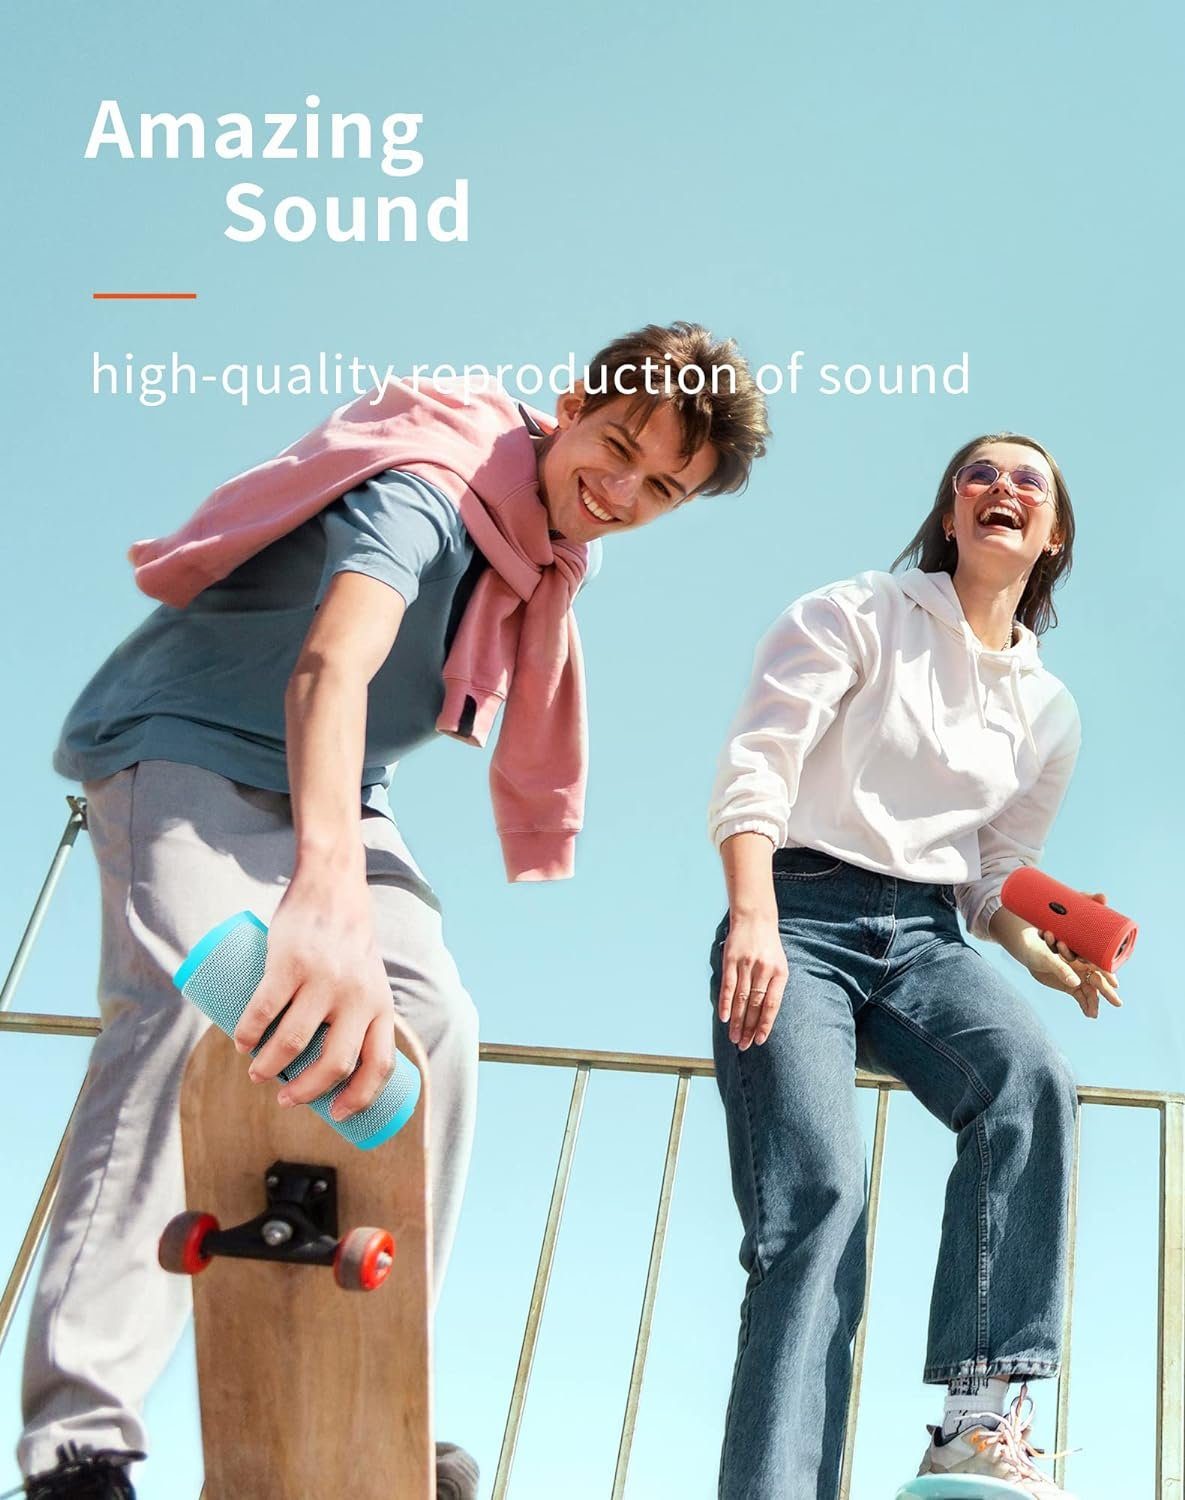 HEYSONG Surround-Sound Lautsprecher (16 W, Bass) 40h Satter Licht Musikbox Tragbarer Akku, mit IPX7 Bluetooth